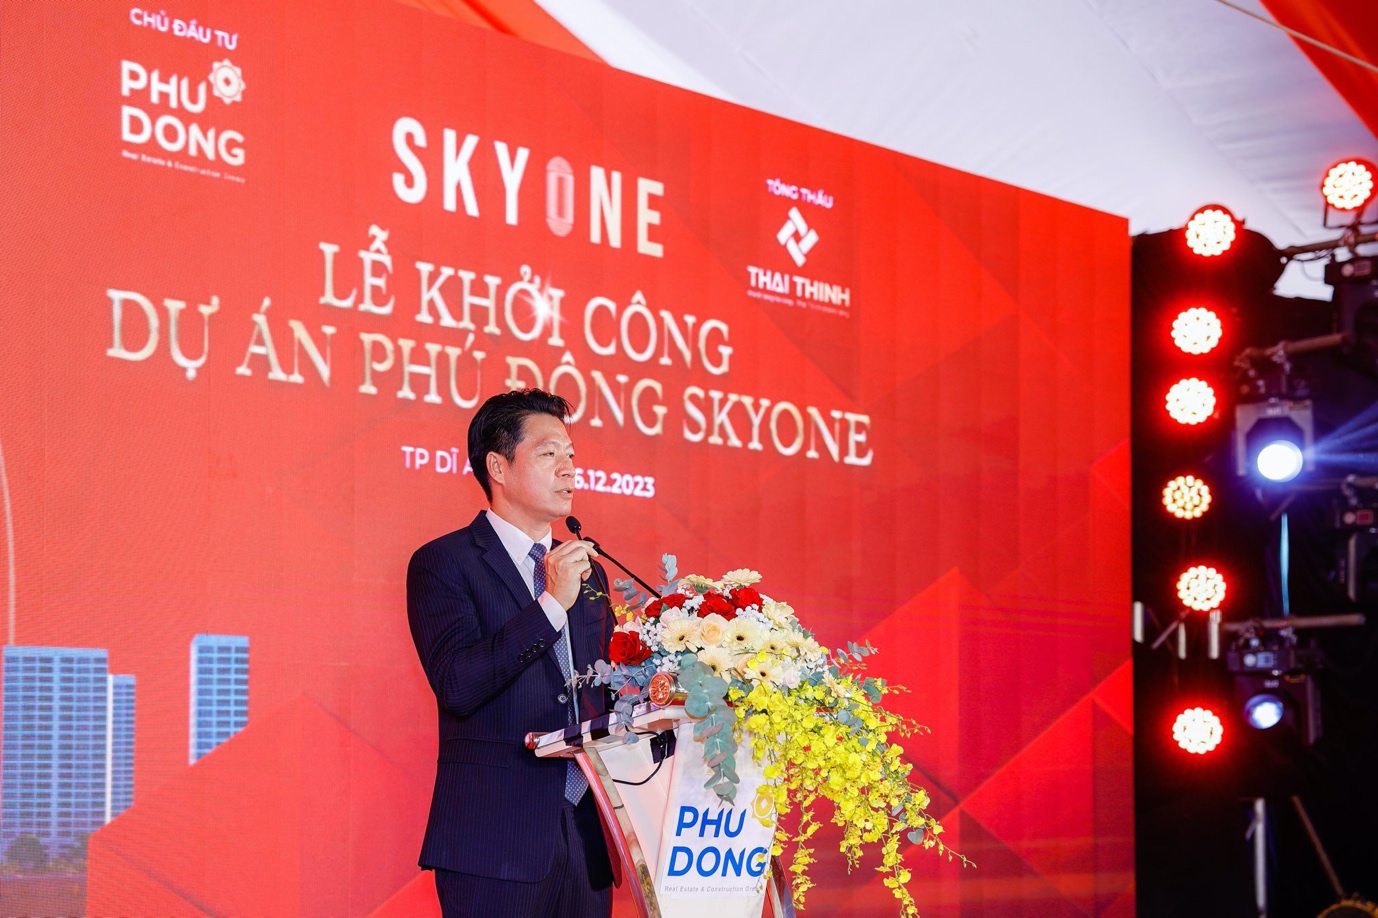 Phú Đông SkyOne khởi công, thị trường sắp có căn hộ vừa túi tiền - Ảnh 1.